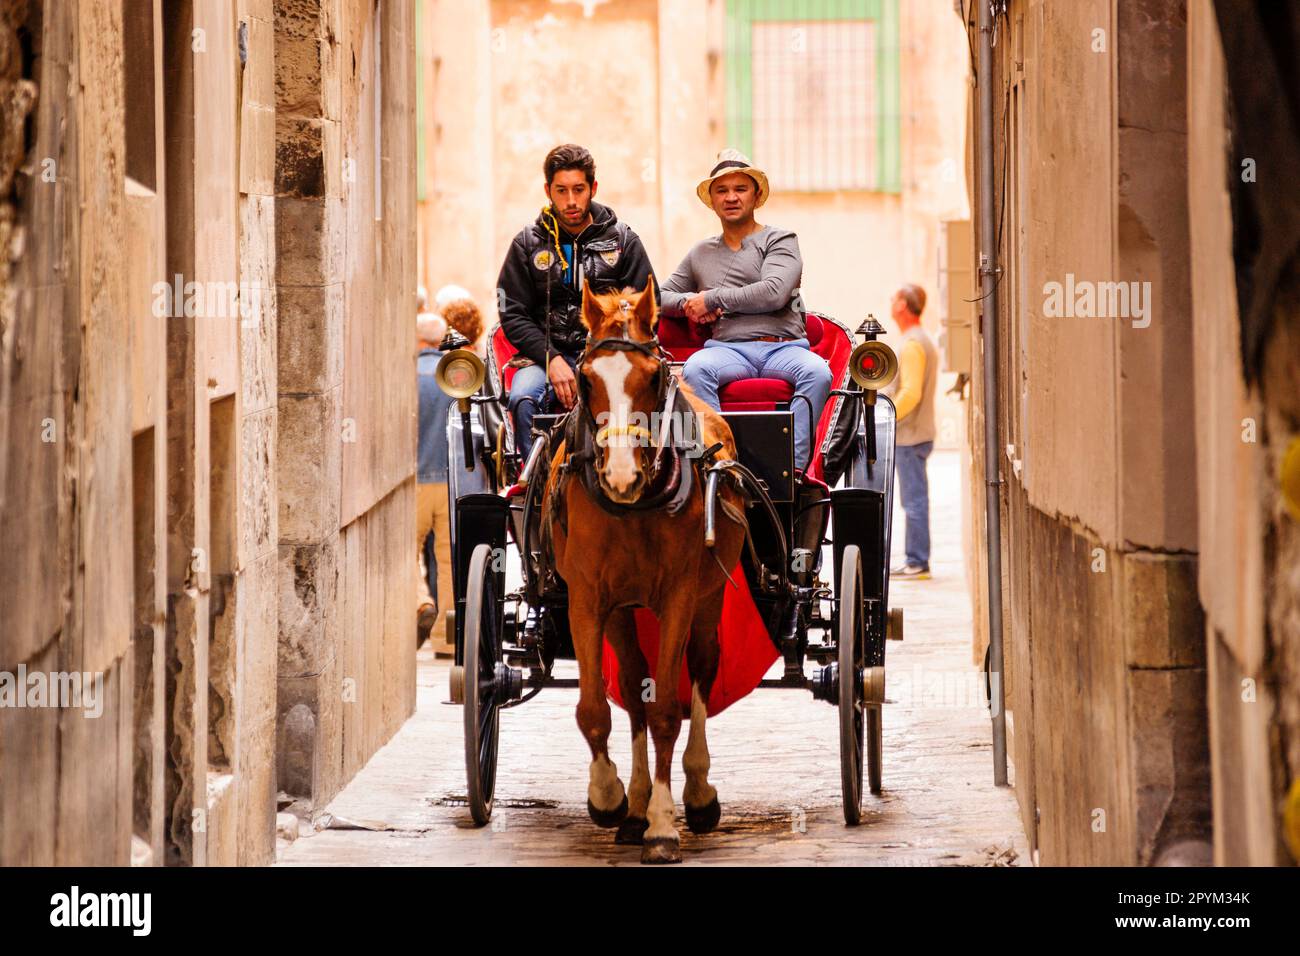 coche de caballos en un callejon,Palma, mallorca, islas baleares, Spain, europa Stock Photo